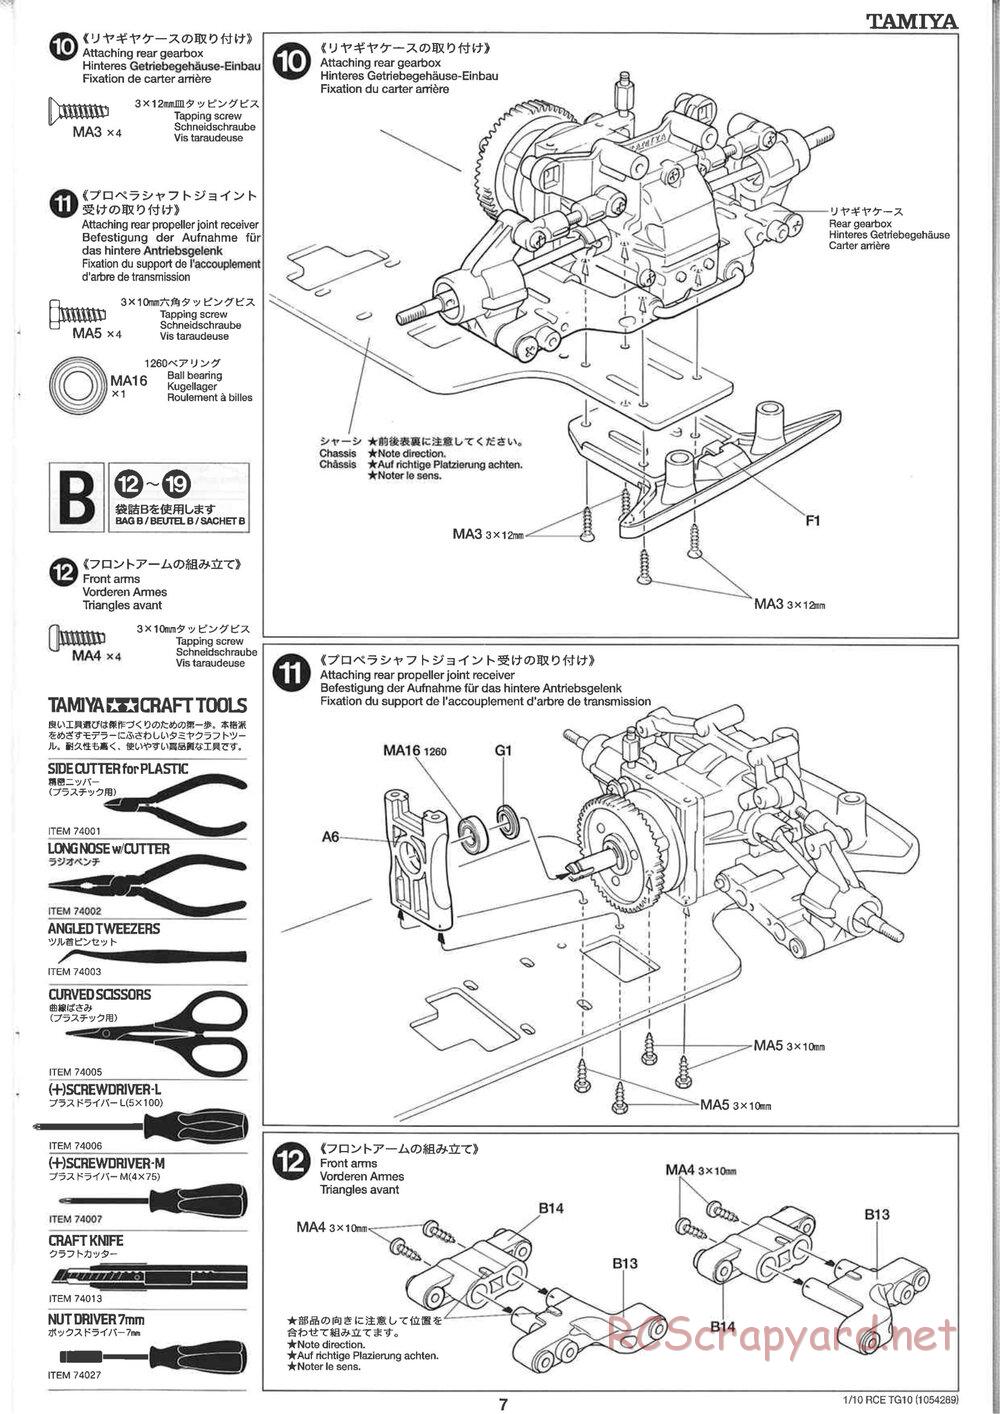 Tamiya - TG10 Mk.1 Chassis - Manual - Page 7